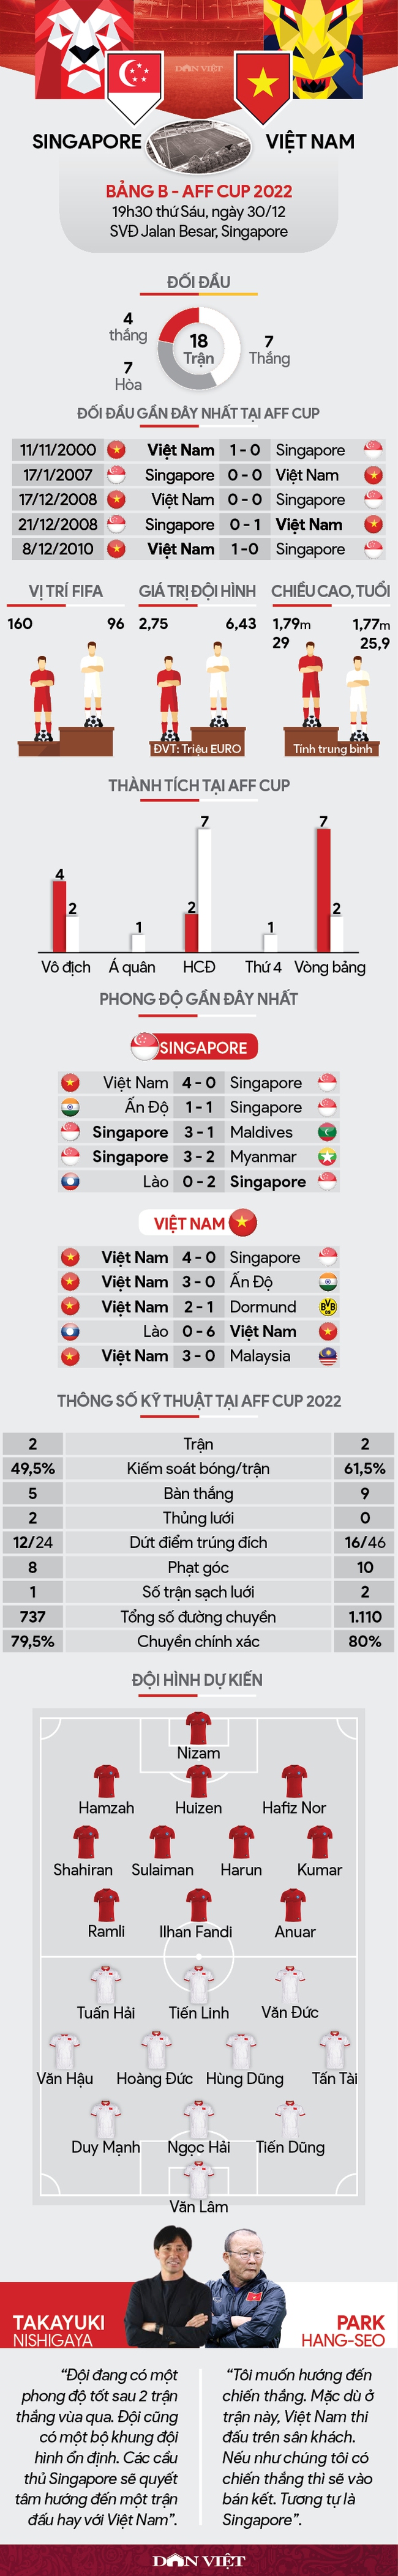 Tương quan lực lượng Singapore vs Việt Nam: Thắng nhẹ vào bán kết - Ảnh 1.